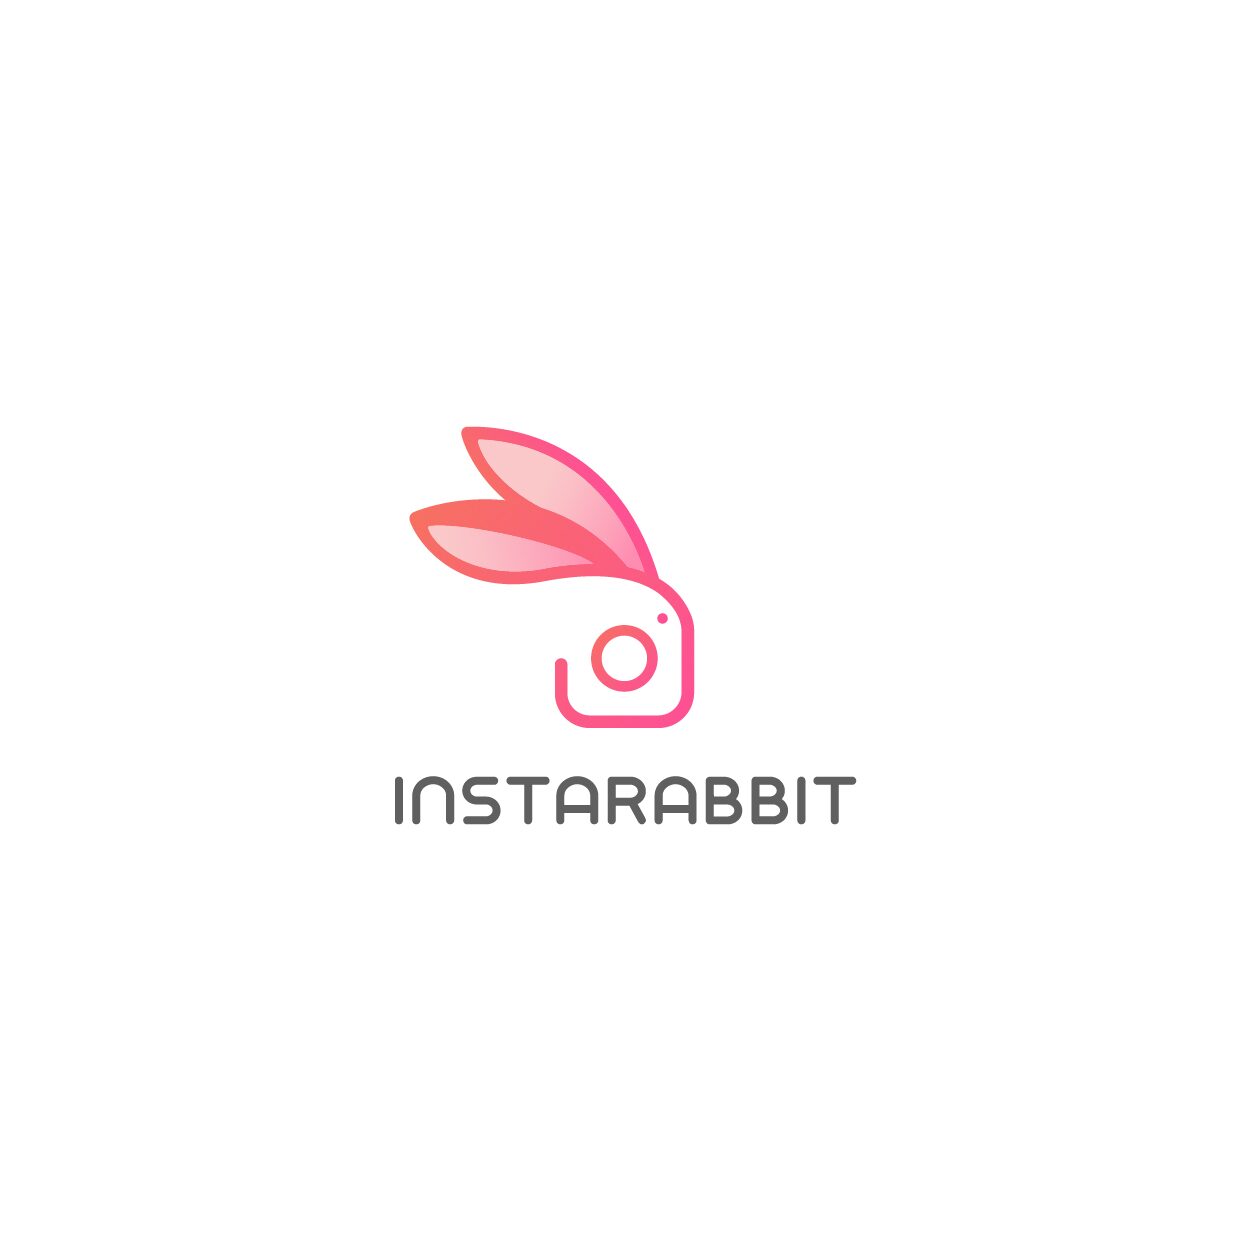 Examen Instarabbit: cela stimule-t-il vraiment votre engagement Instagram?